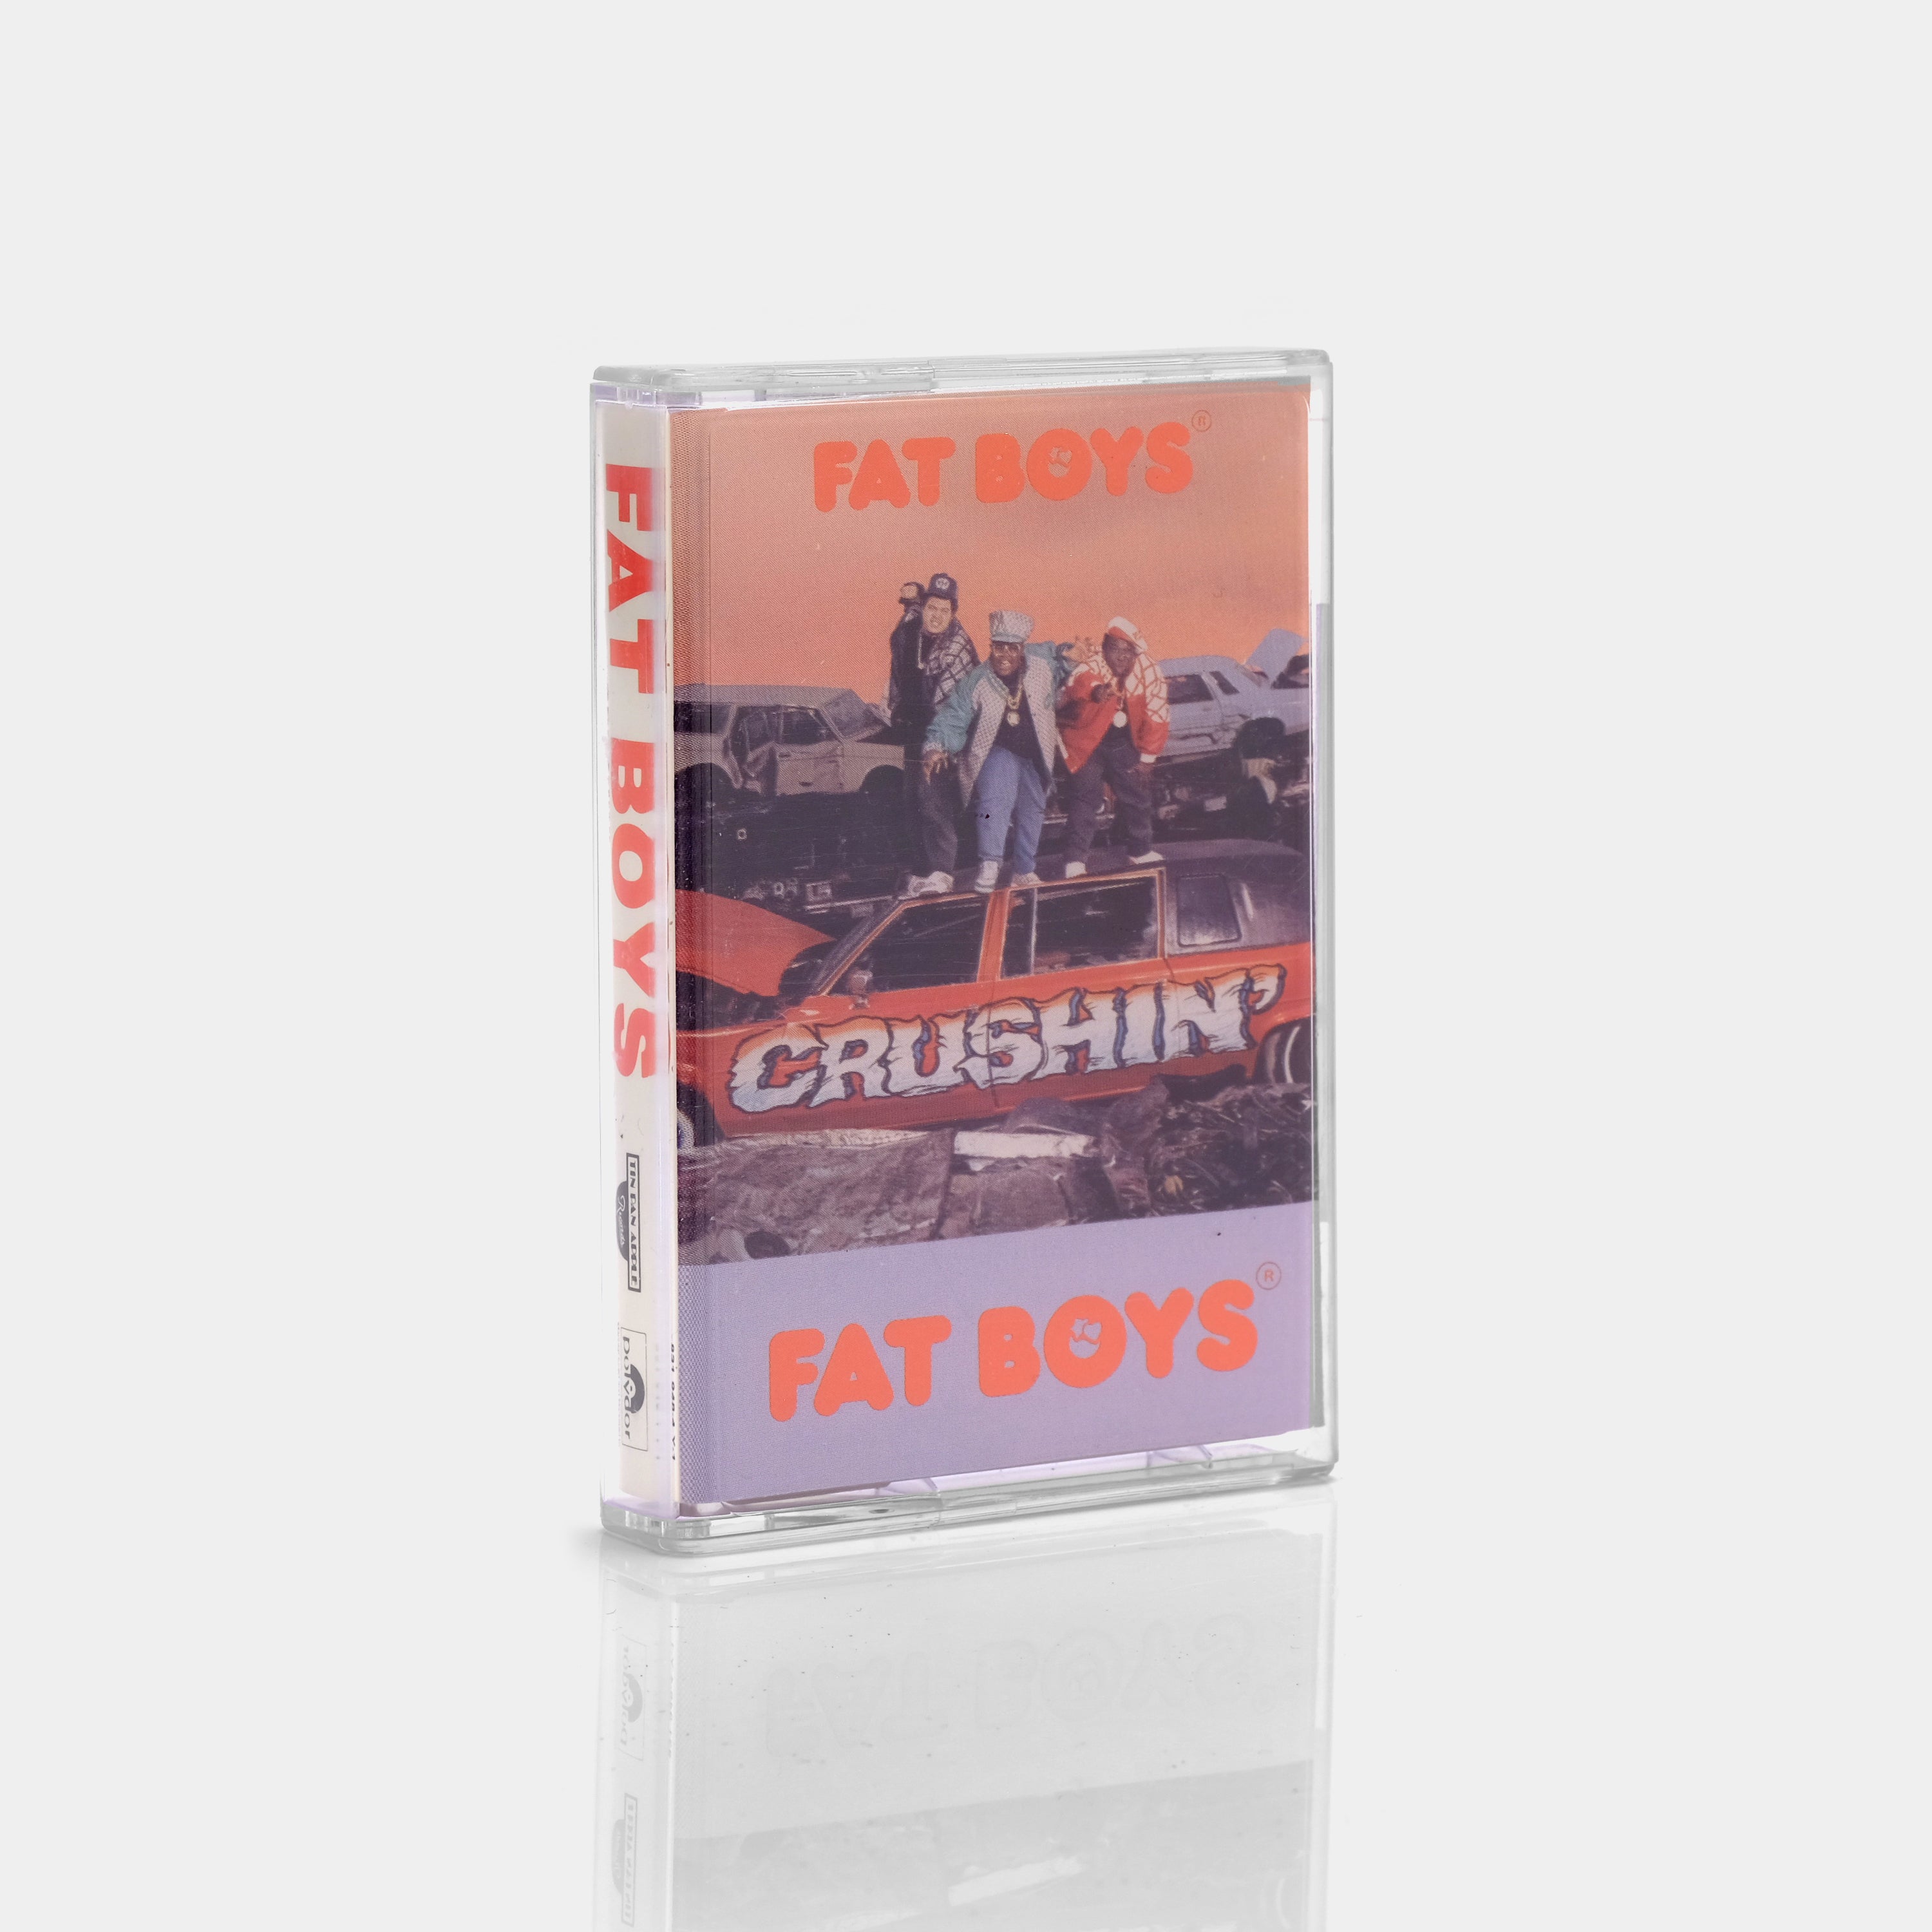 Fat Boys - Crushin' Cassette Tape